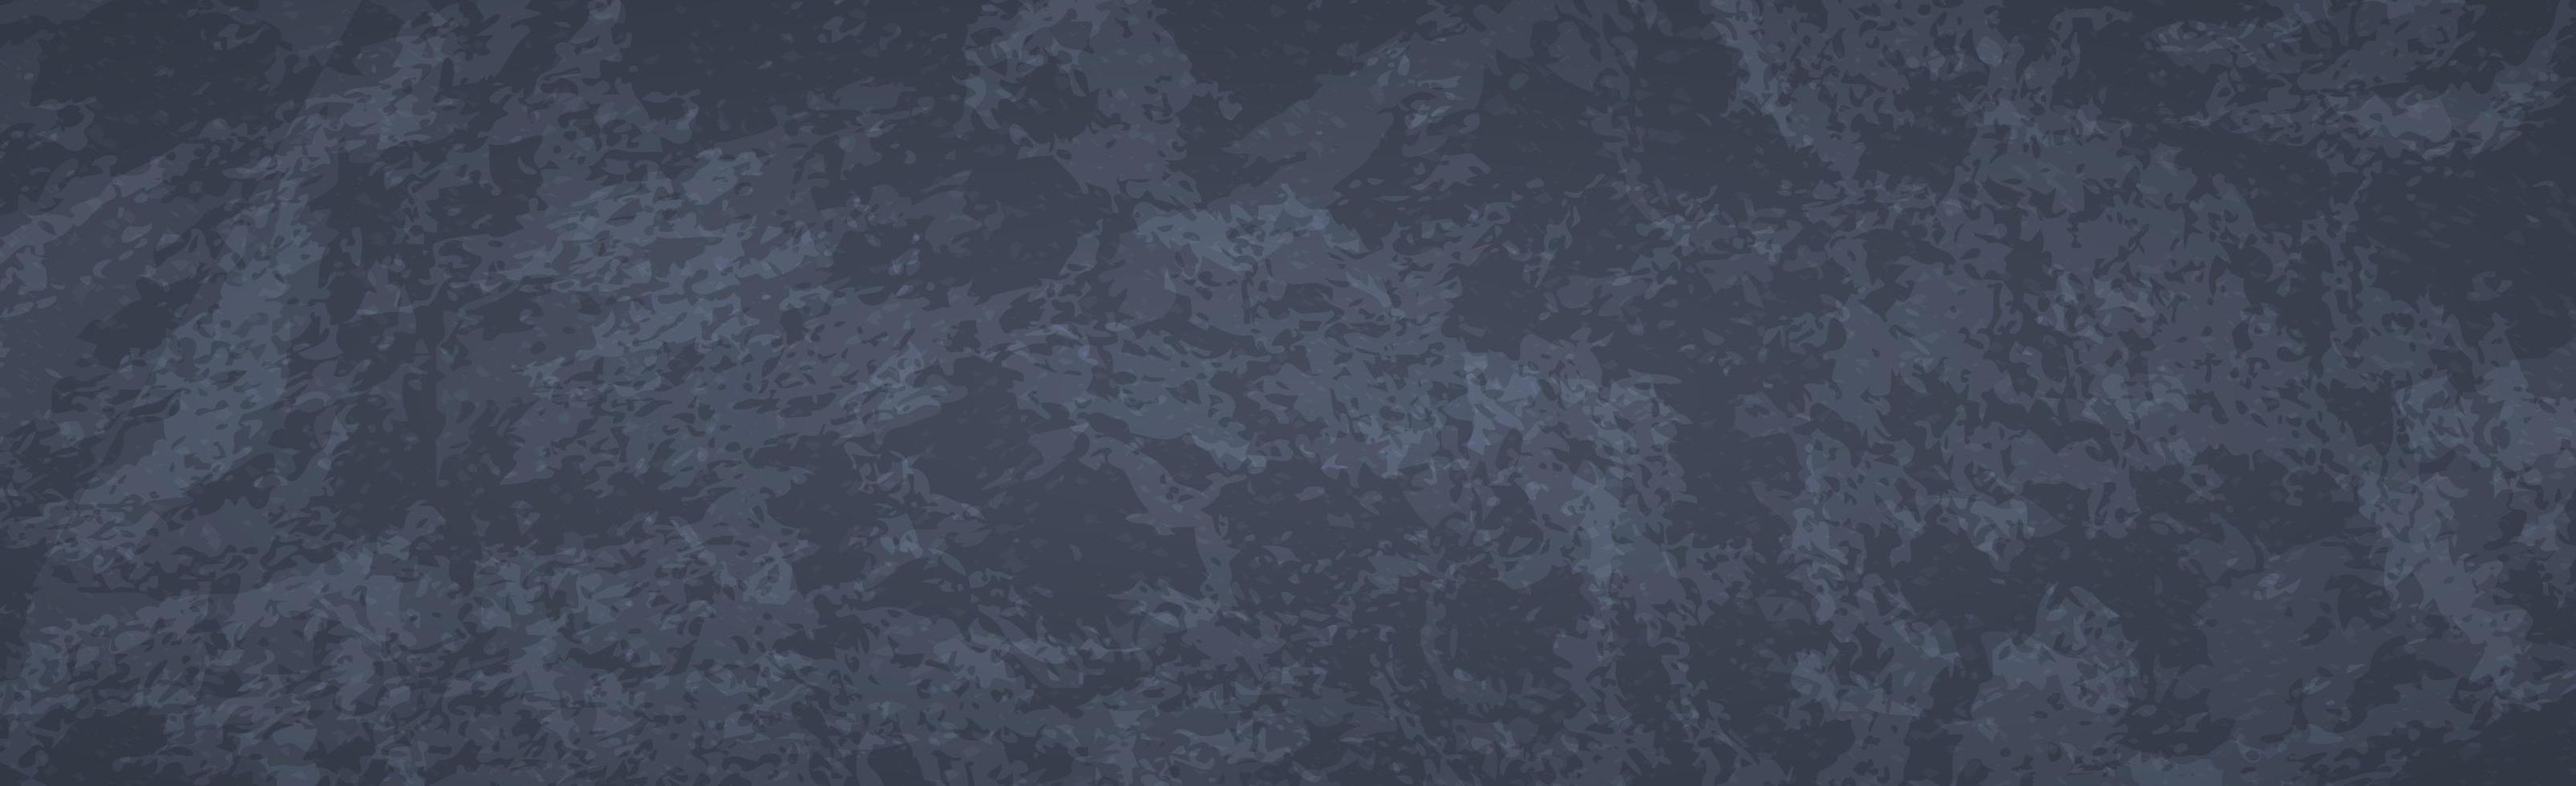 panoramische abstracte getextureerde donkere grunge achtergrond - vector